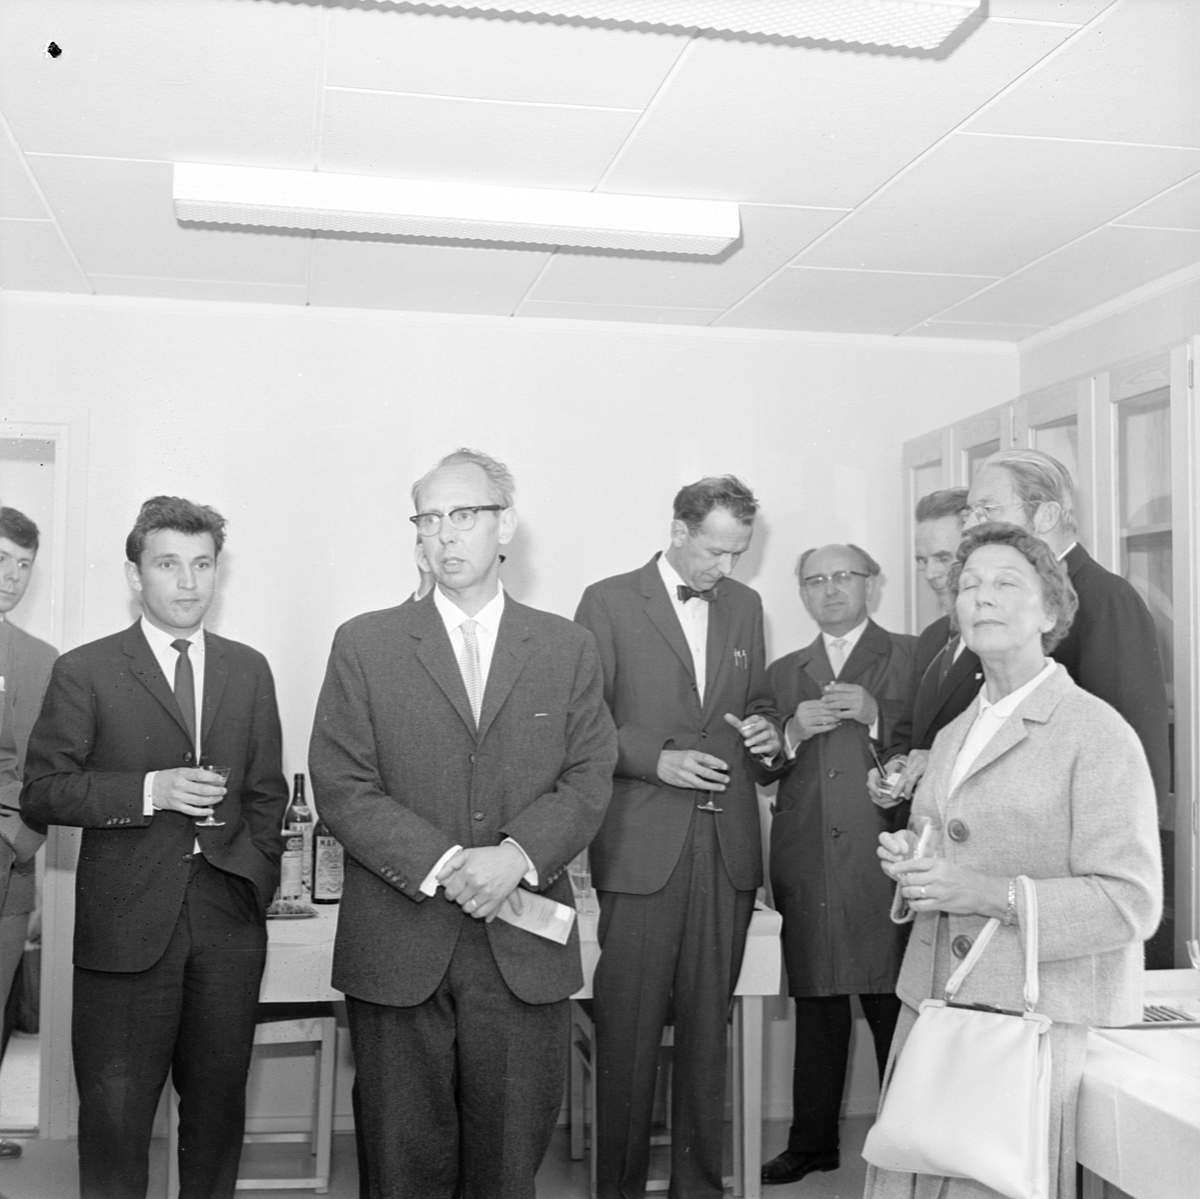 Invigning av Astrogeodetiska observatoriet, Uppsala 1962